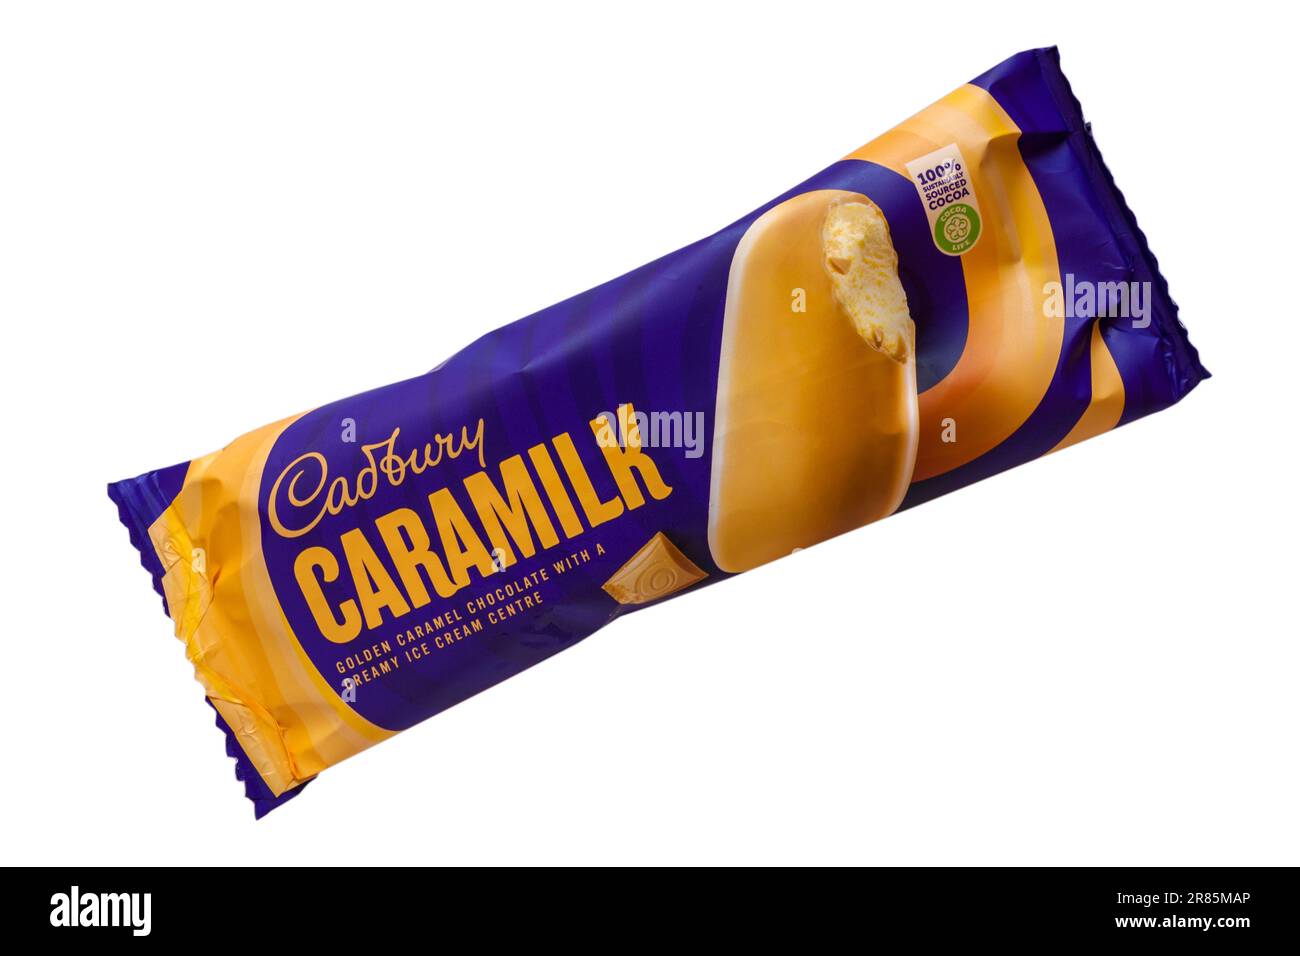 Gelato alla crema Cadbury Caramilk isolato su fondo bianco - cioccolato al caramello dorato con un centro gelato cremoso Foto Stock